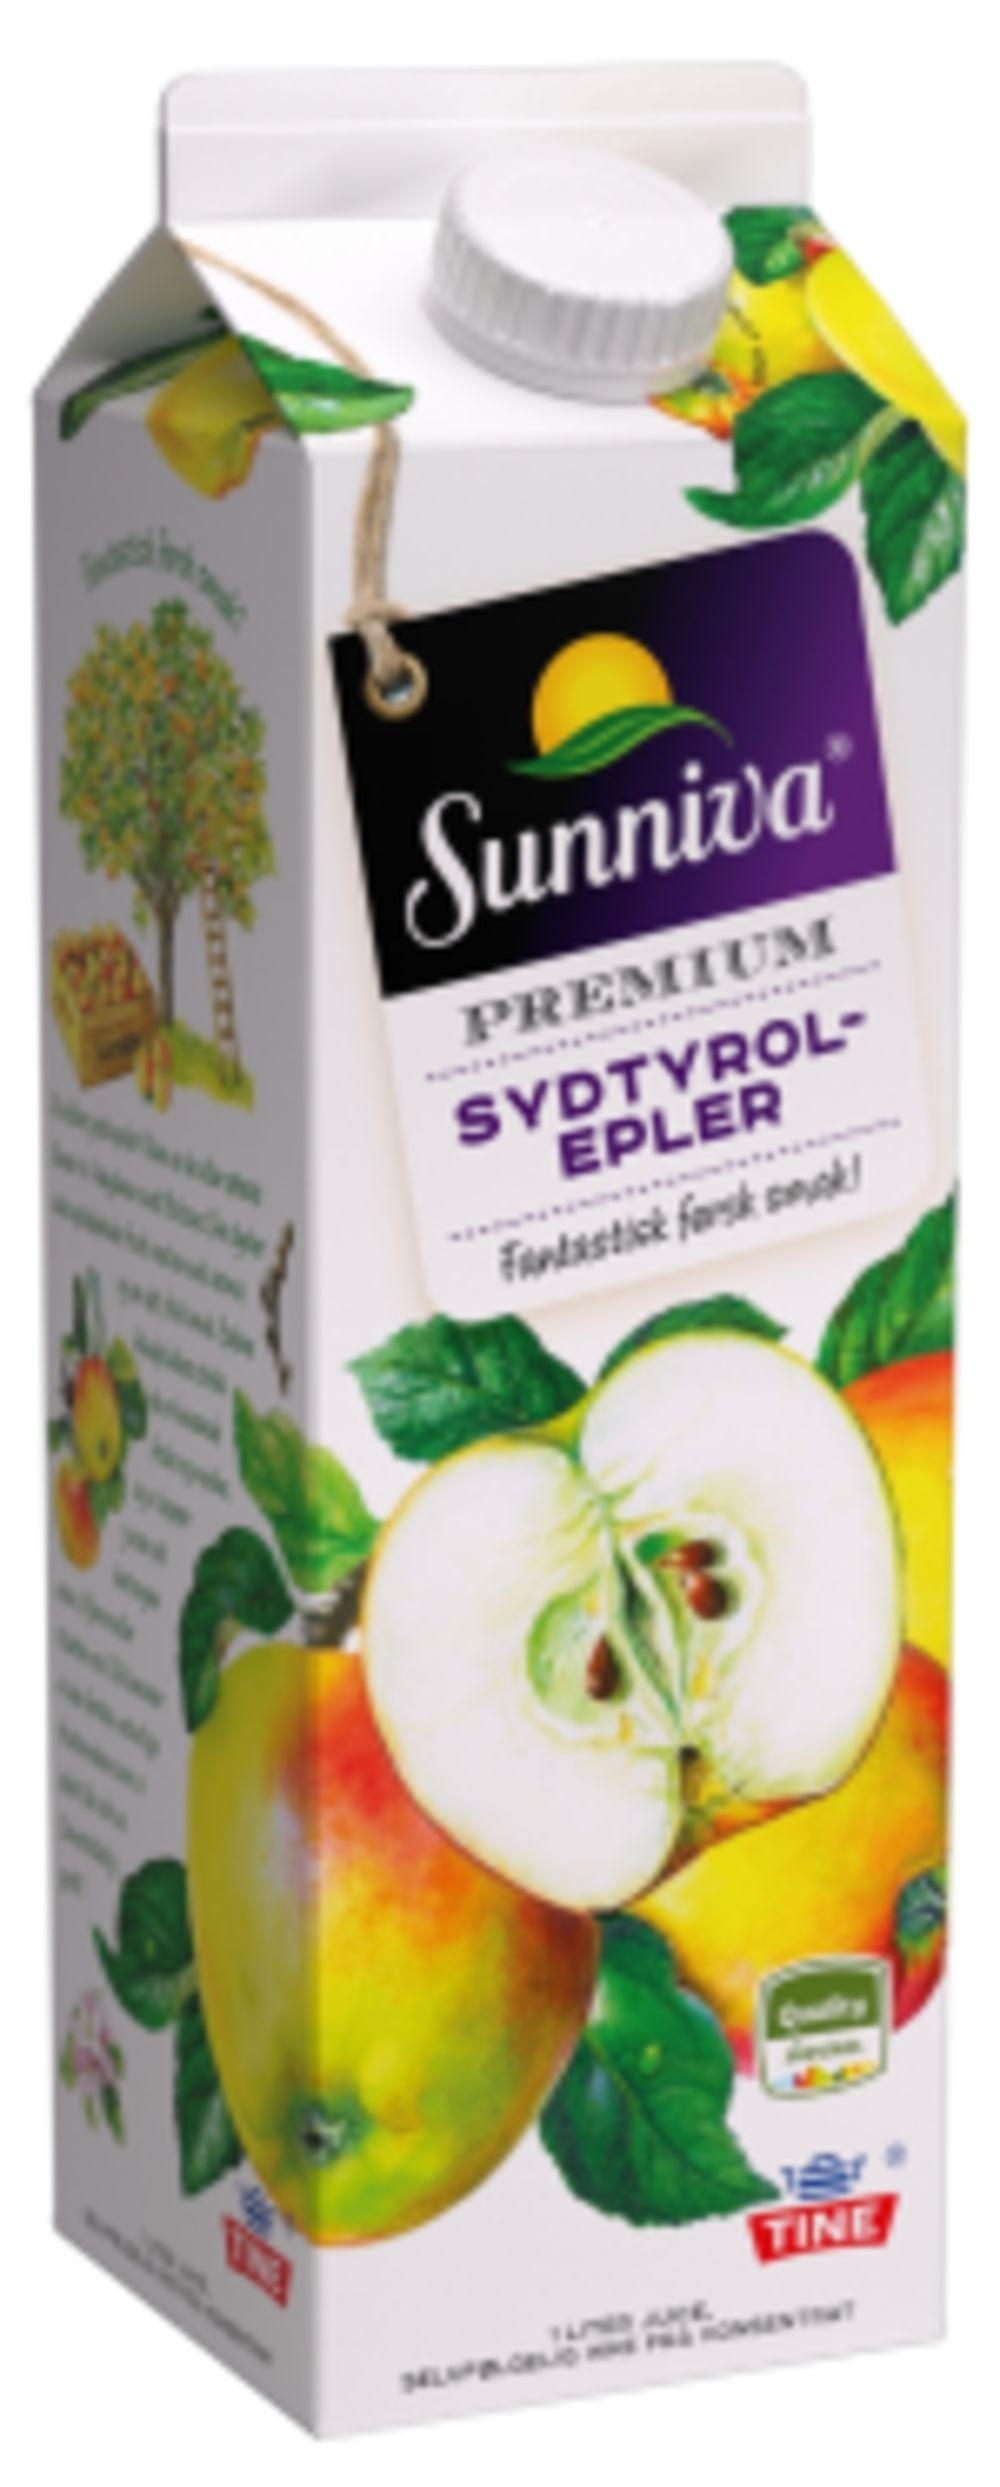 Eplejuice Premium Sydtyrol-epler, 1 l